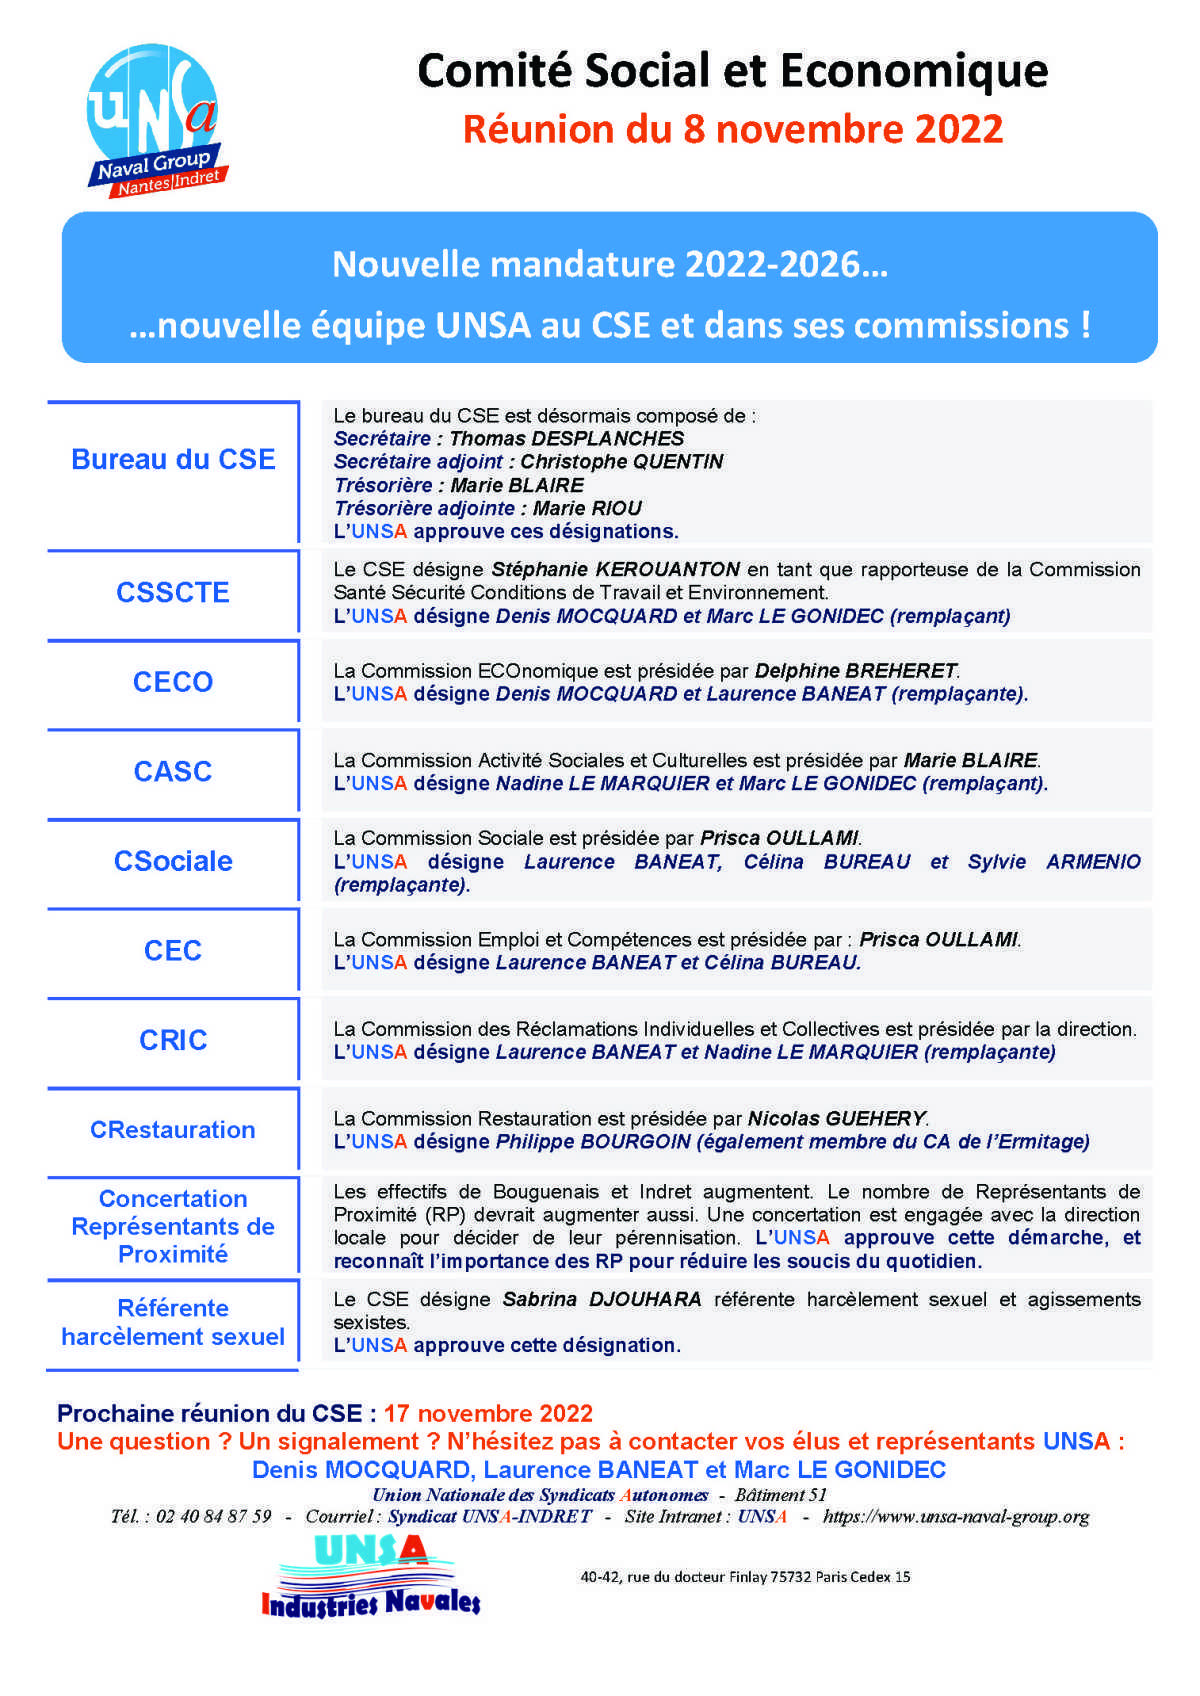 CSE de constitution d'Indret - Réunion du 8 novembre 2022 - Compte rendu